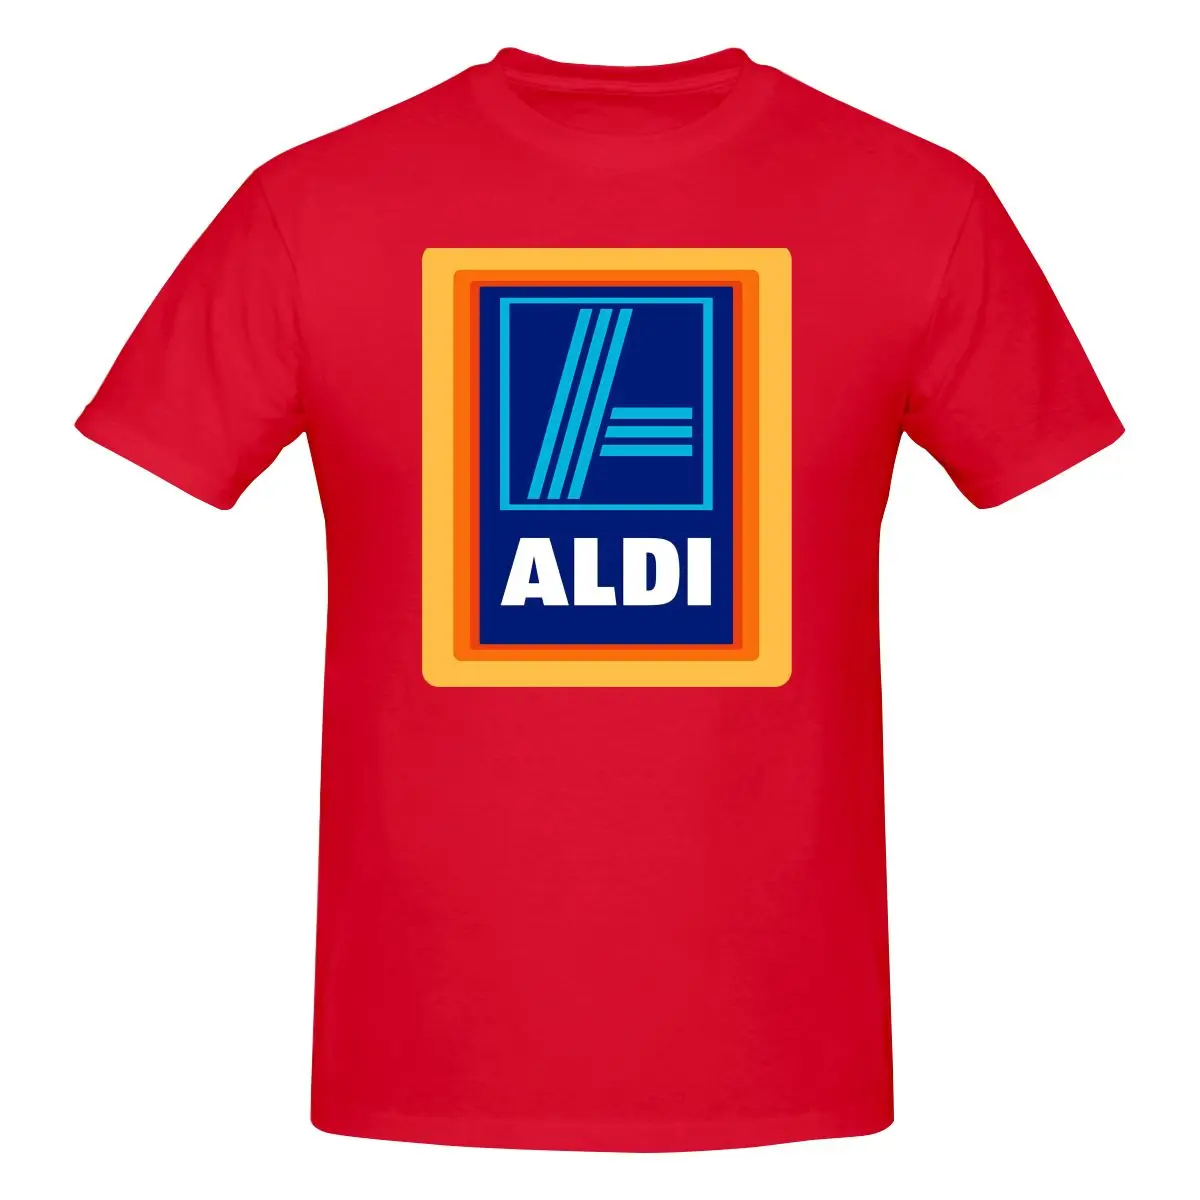 Продуктовый Магазин Aldi Market, супермаркет, Фанатская рубашка, футболка, подарок, Модный бестселлер премиум-класса